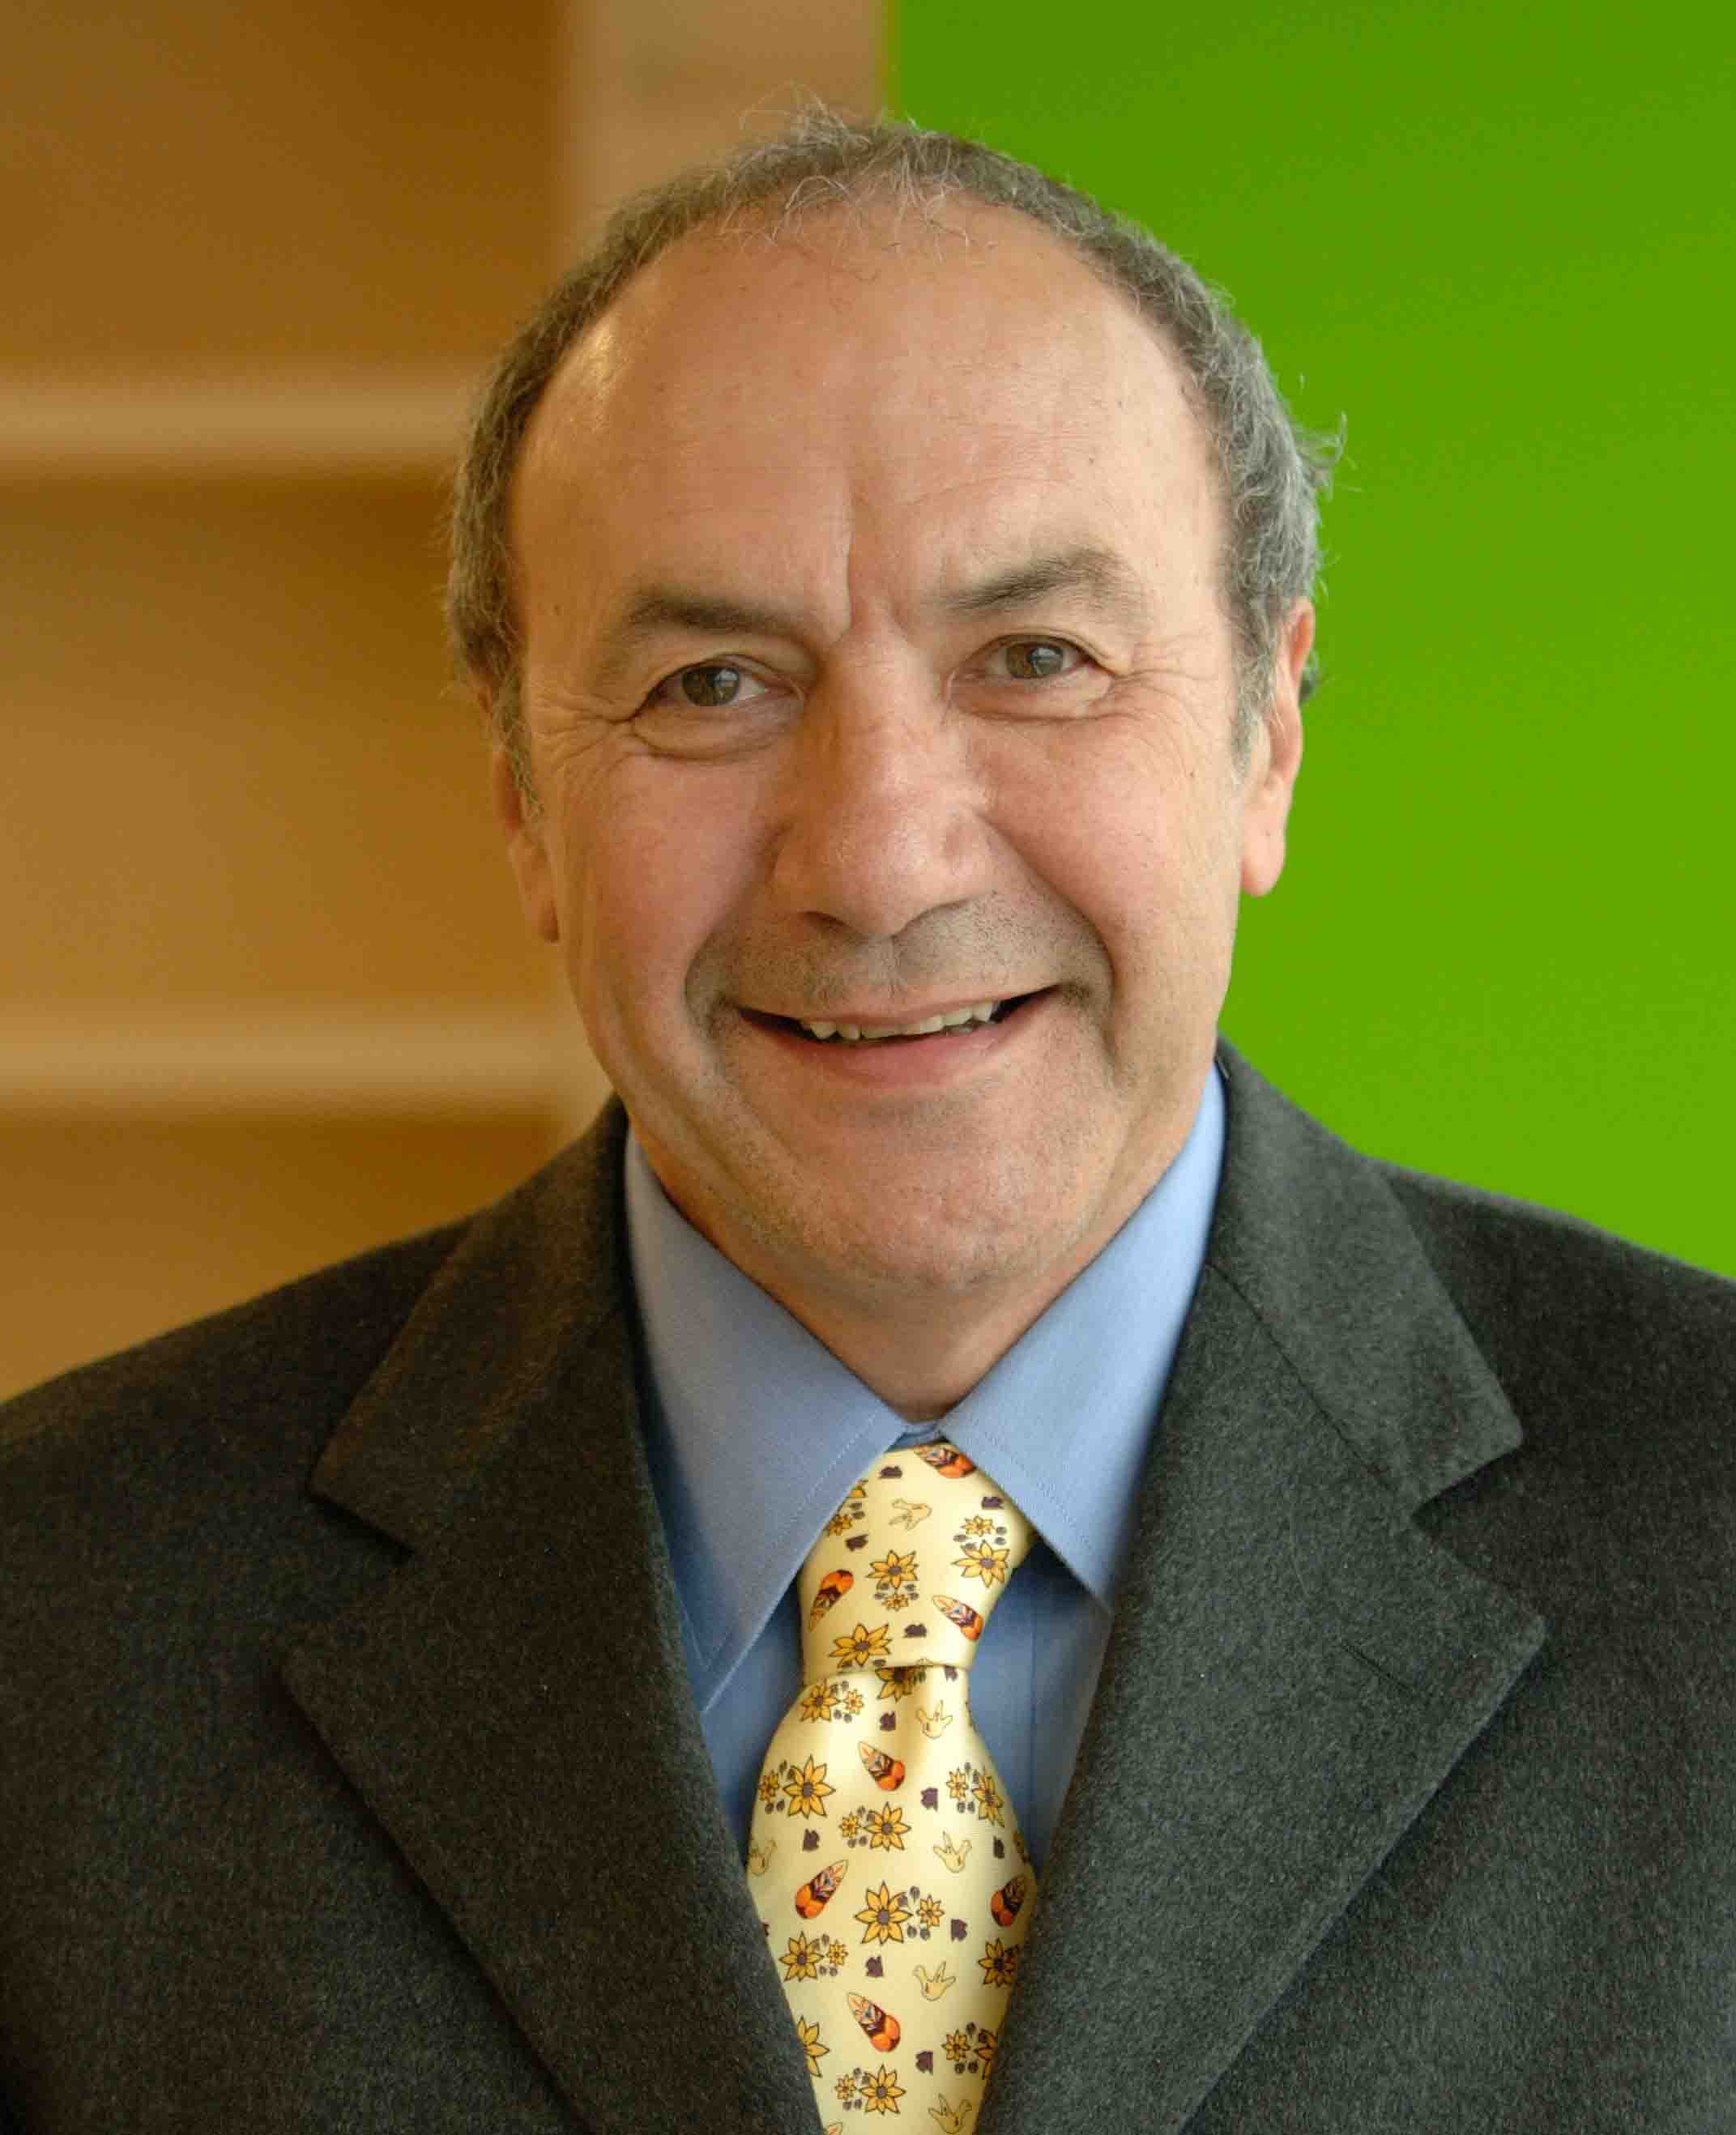 Dr. Antonio Scarpa